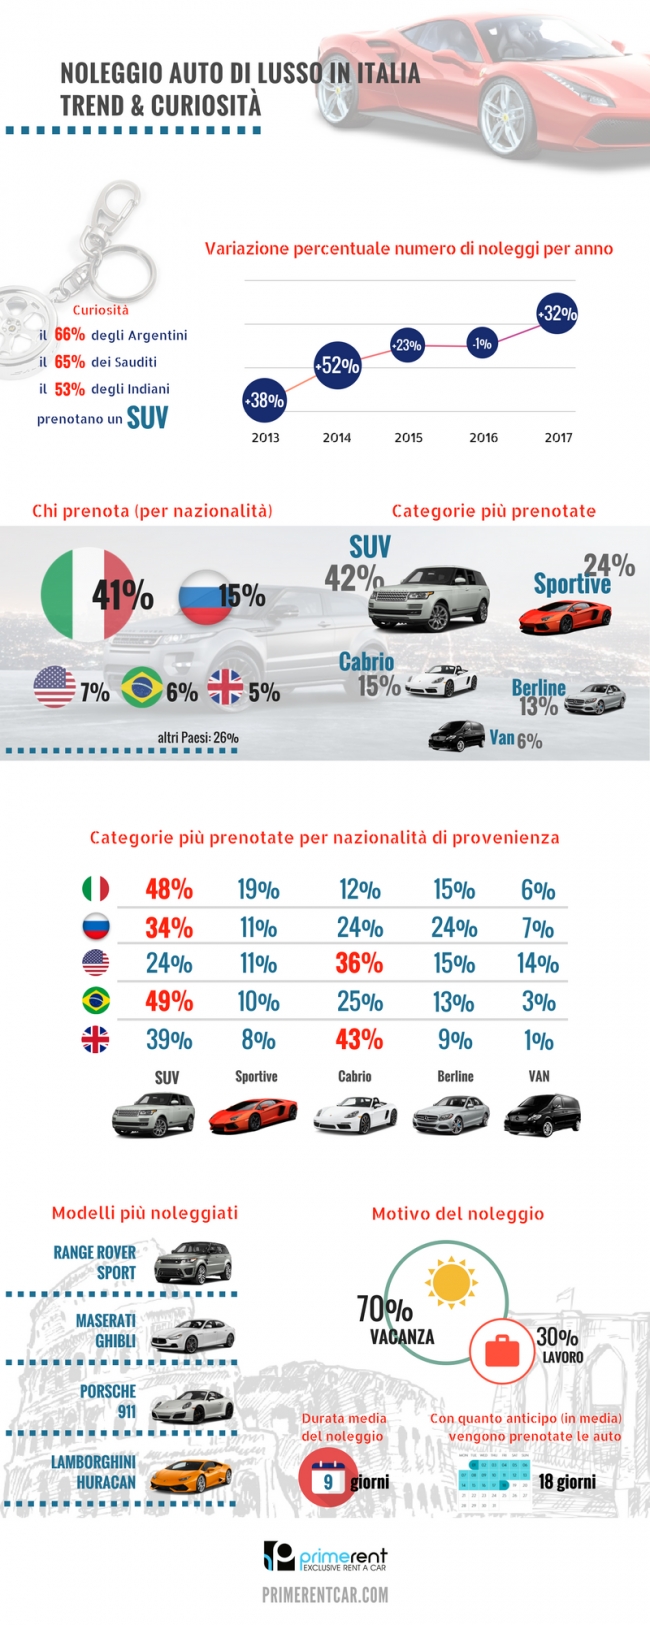 Il noleggio delle auto di lusso in Italia. Un fenomeno in forte crescita